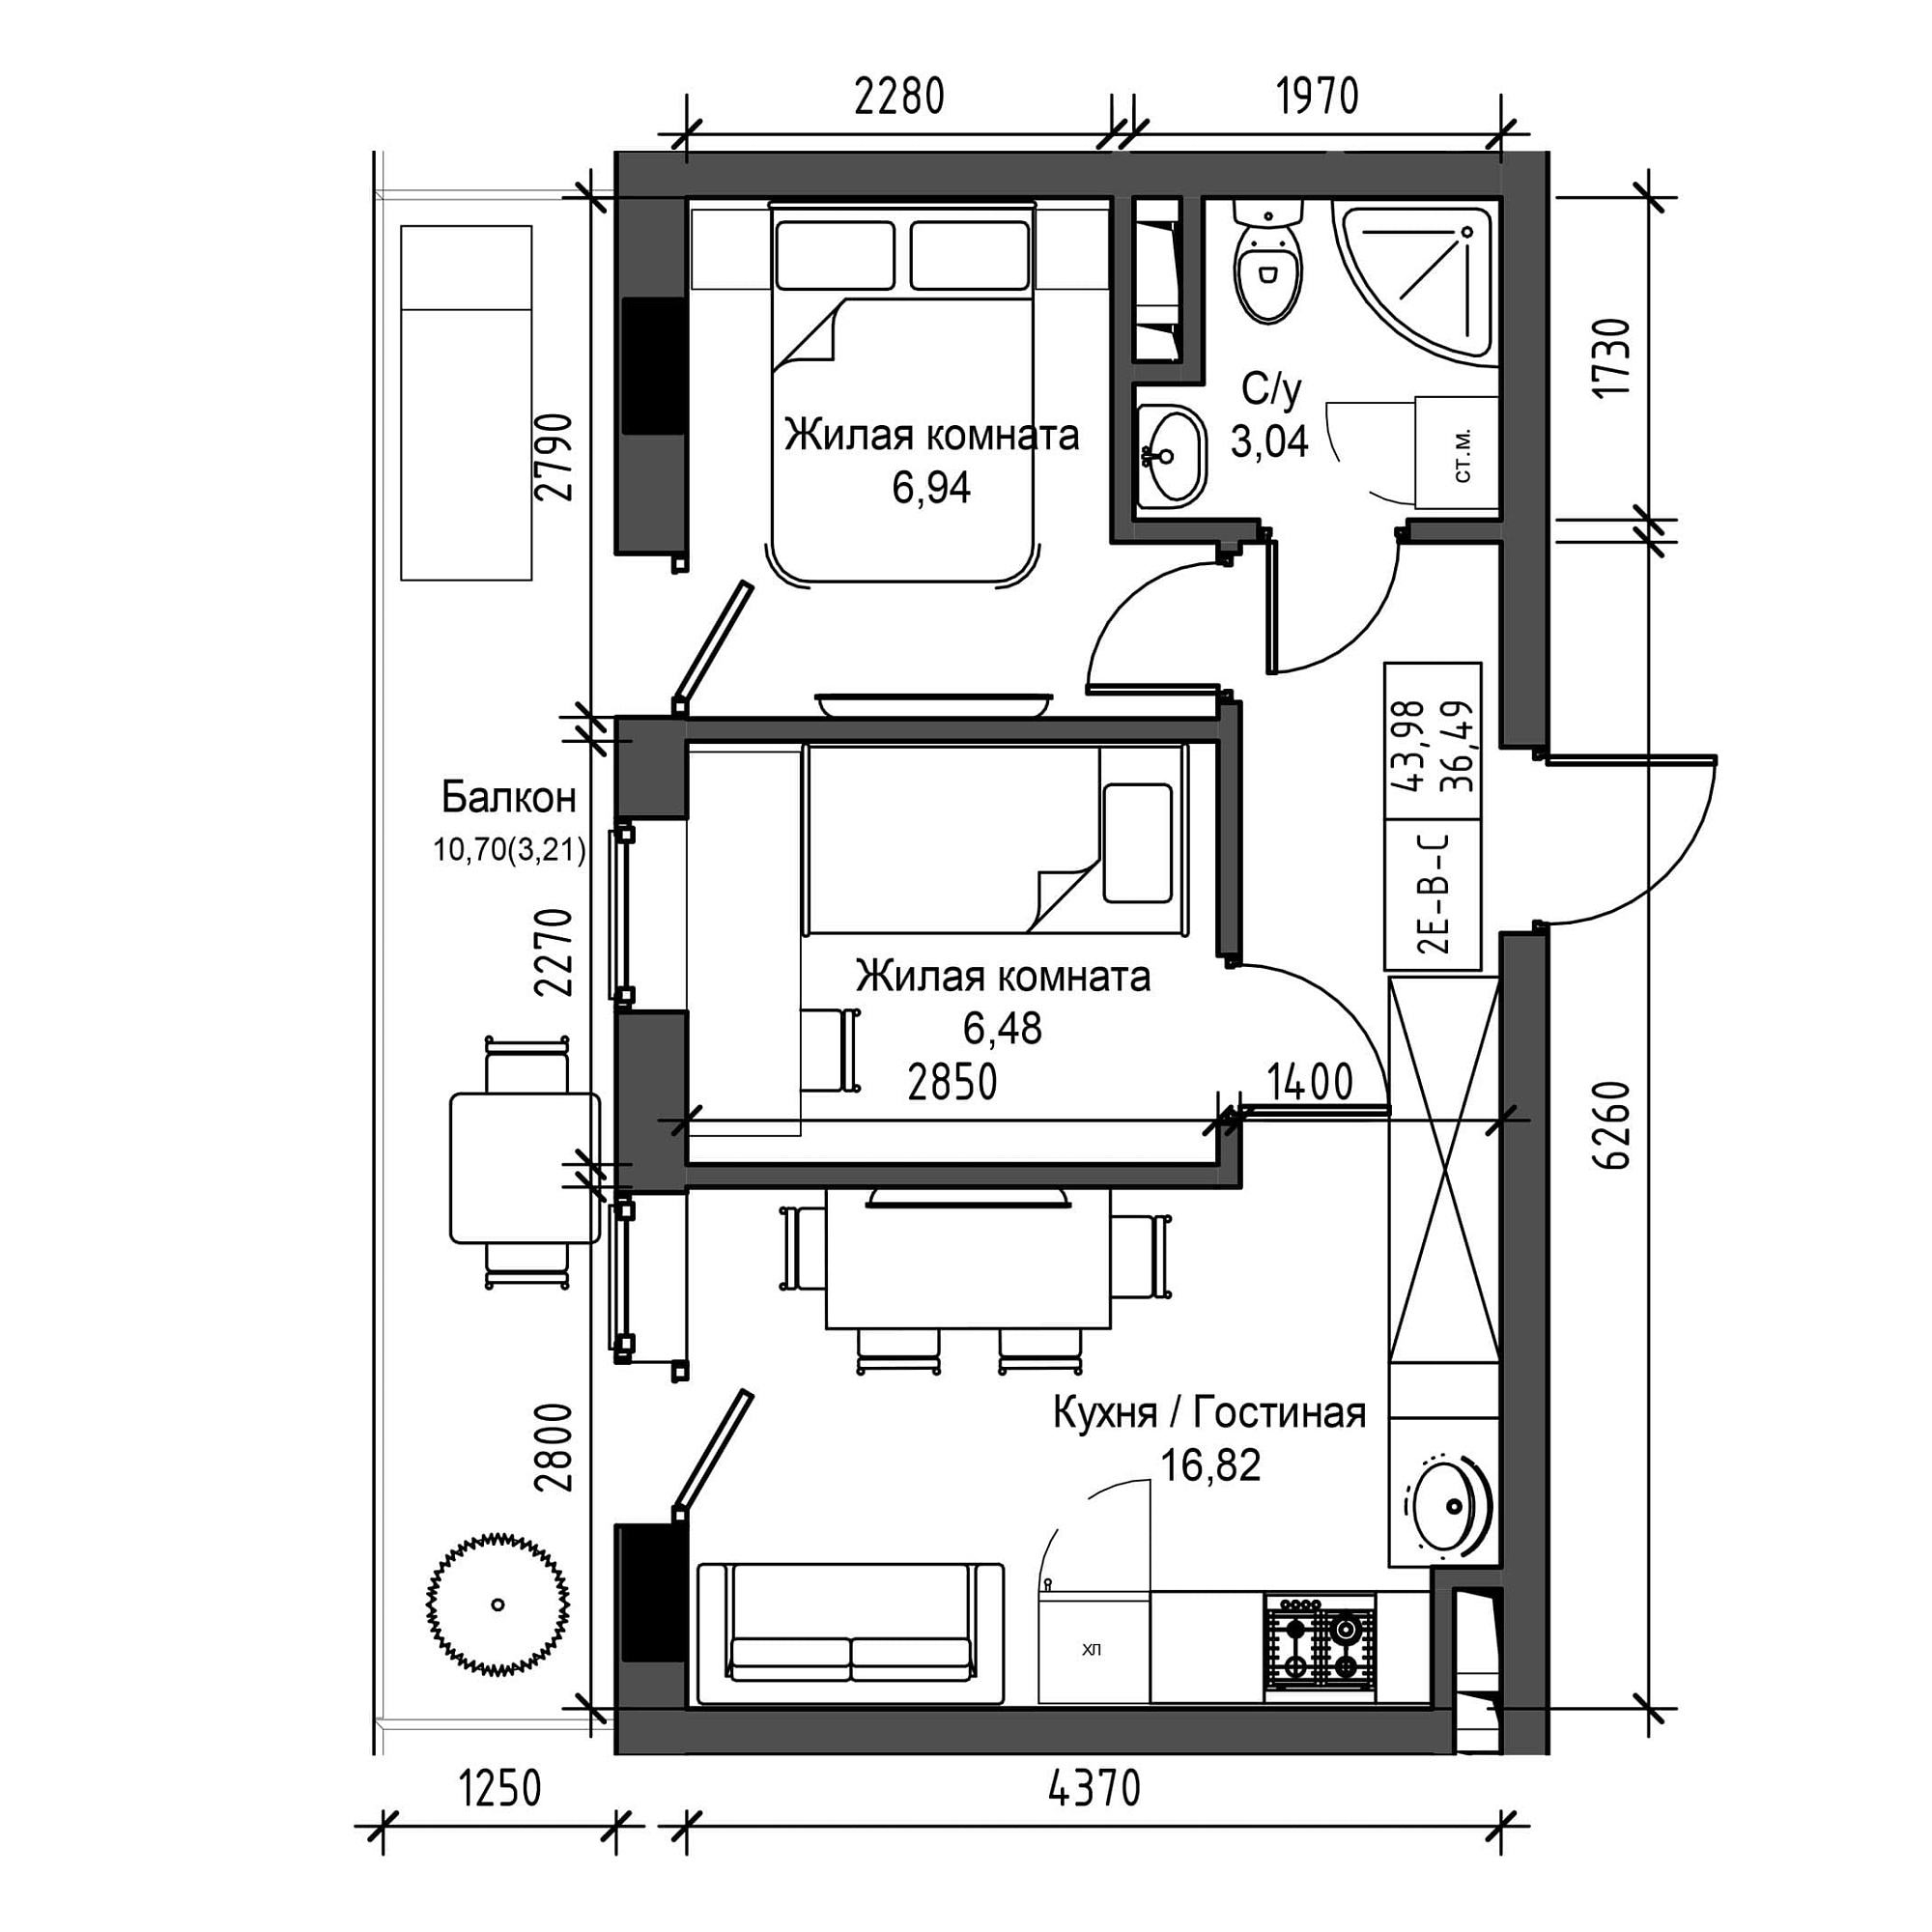 Планировка 2-к квартира площей 36.49м2, UM-001-06/0017.